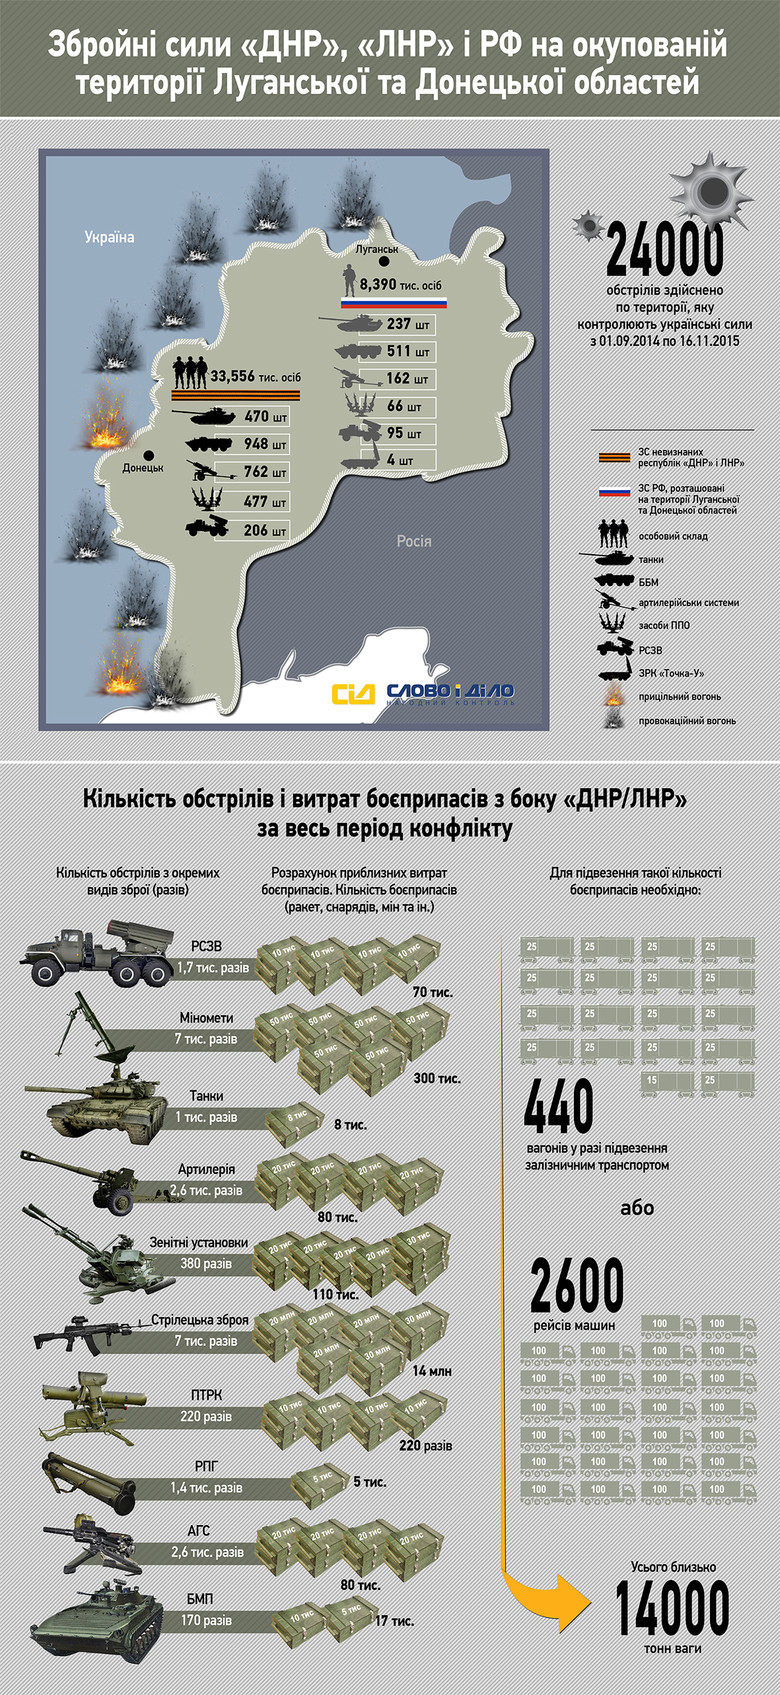 «Слово и Дело» решило разобраться, какое количество боевиков находится на оккупированных территориях Донецкой и Луганской областей и сколько раз обстреливали украинские позиции.